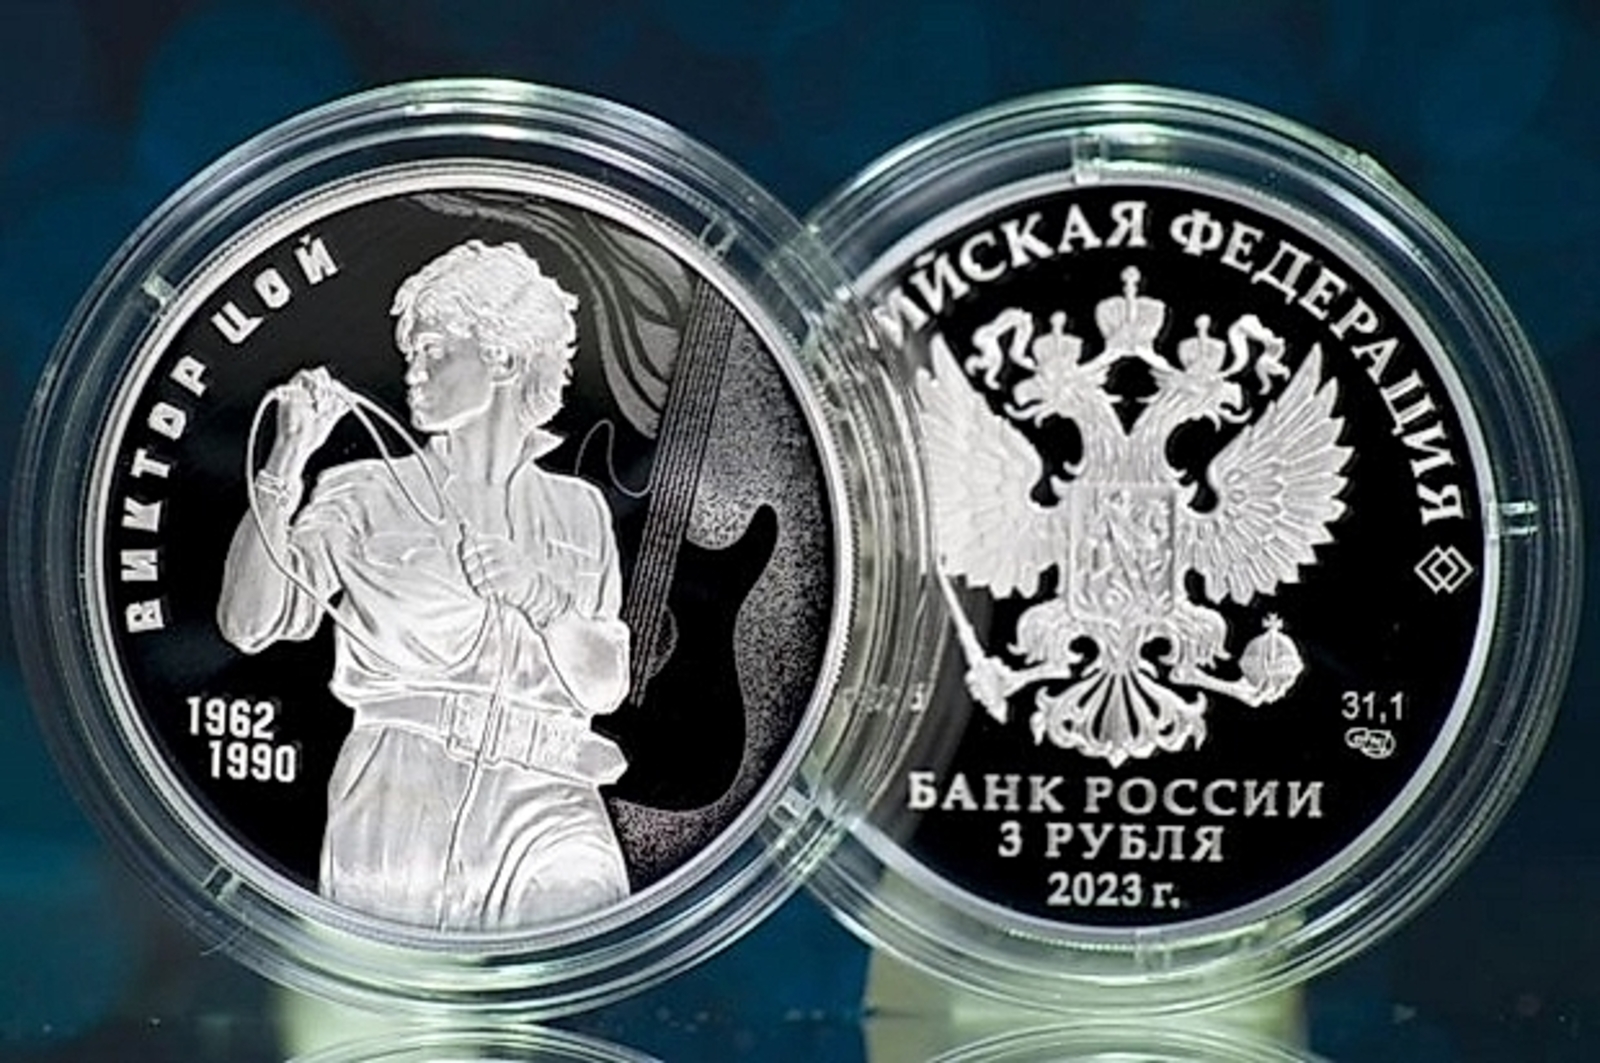 Банк России выпустил памятную трехрублевую монету в память о Викторе Цое